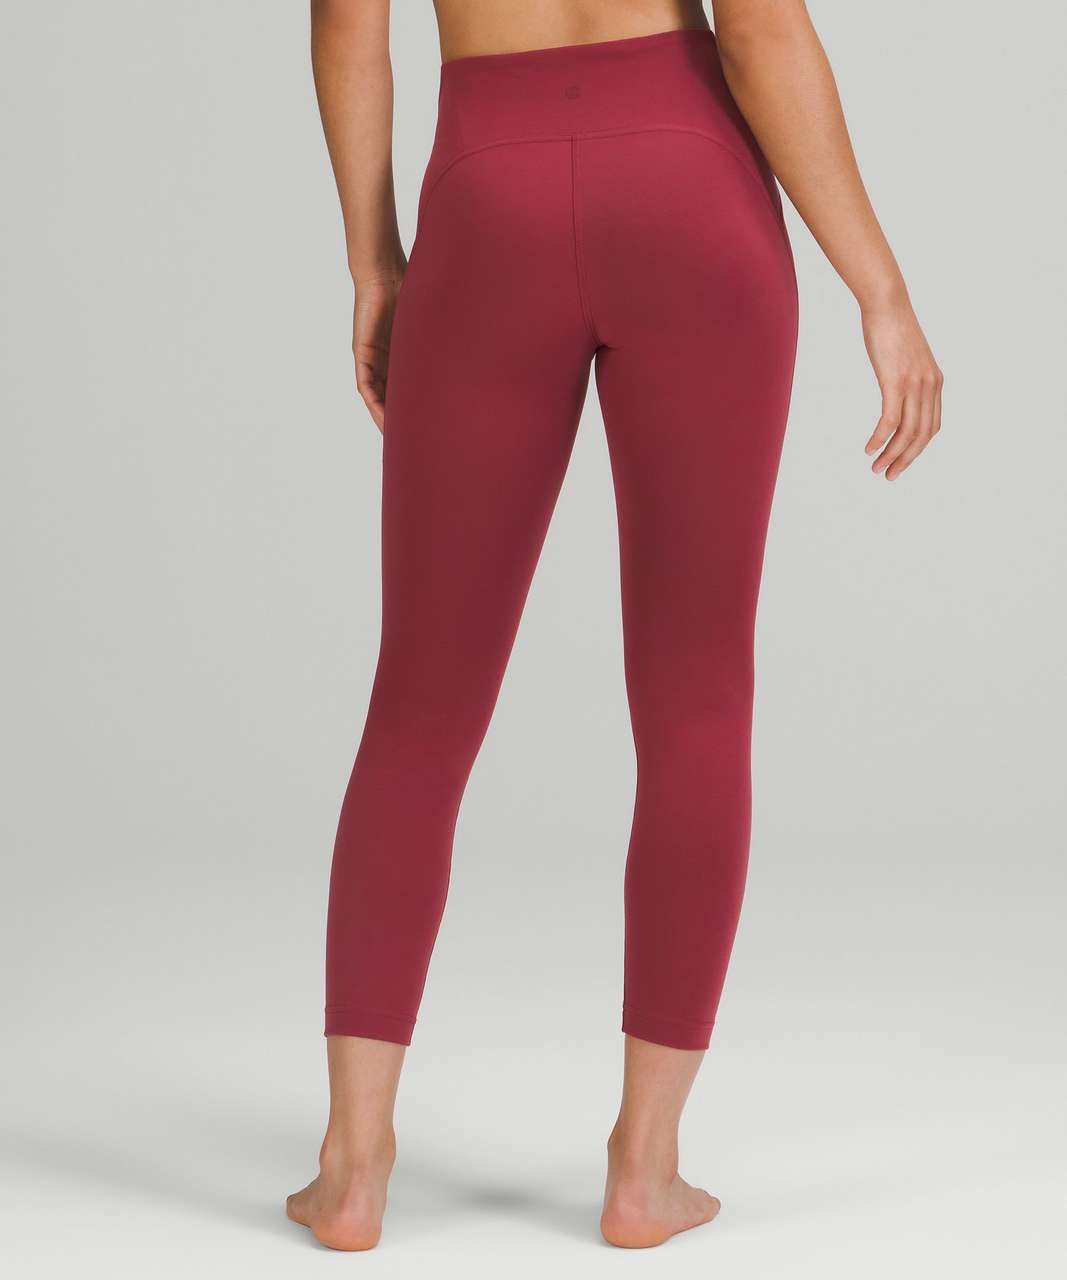 InStill High-Rise Tights 25  Pants for women, Women's leggings, Women